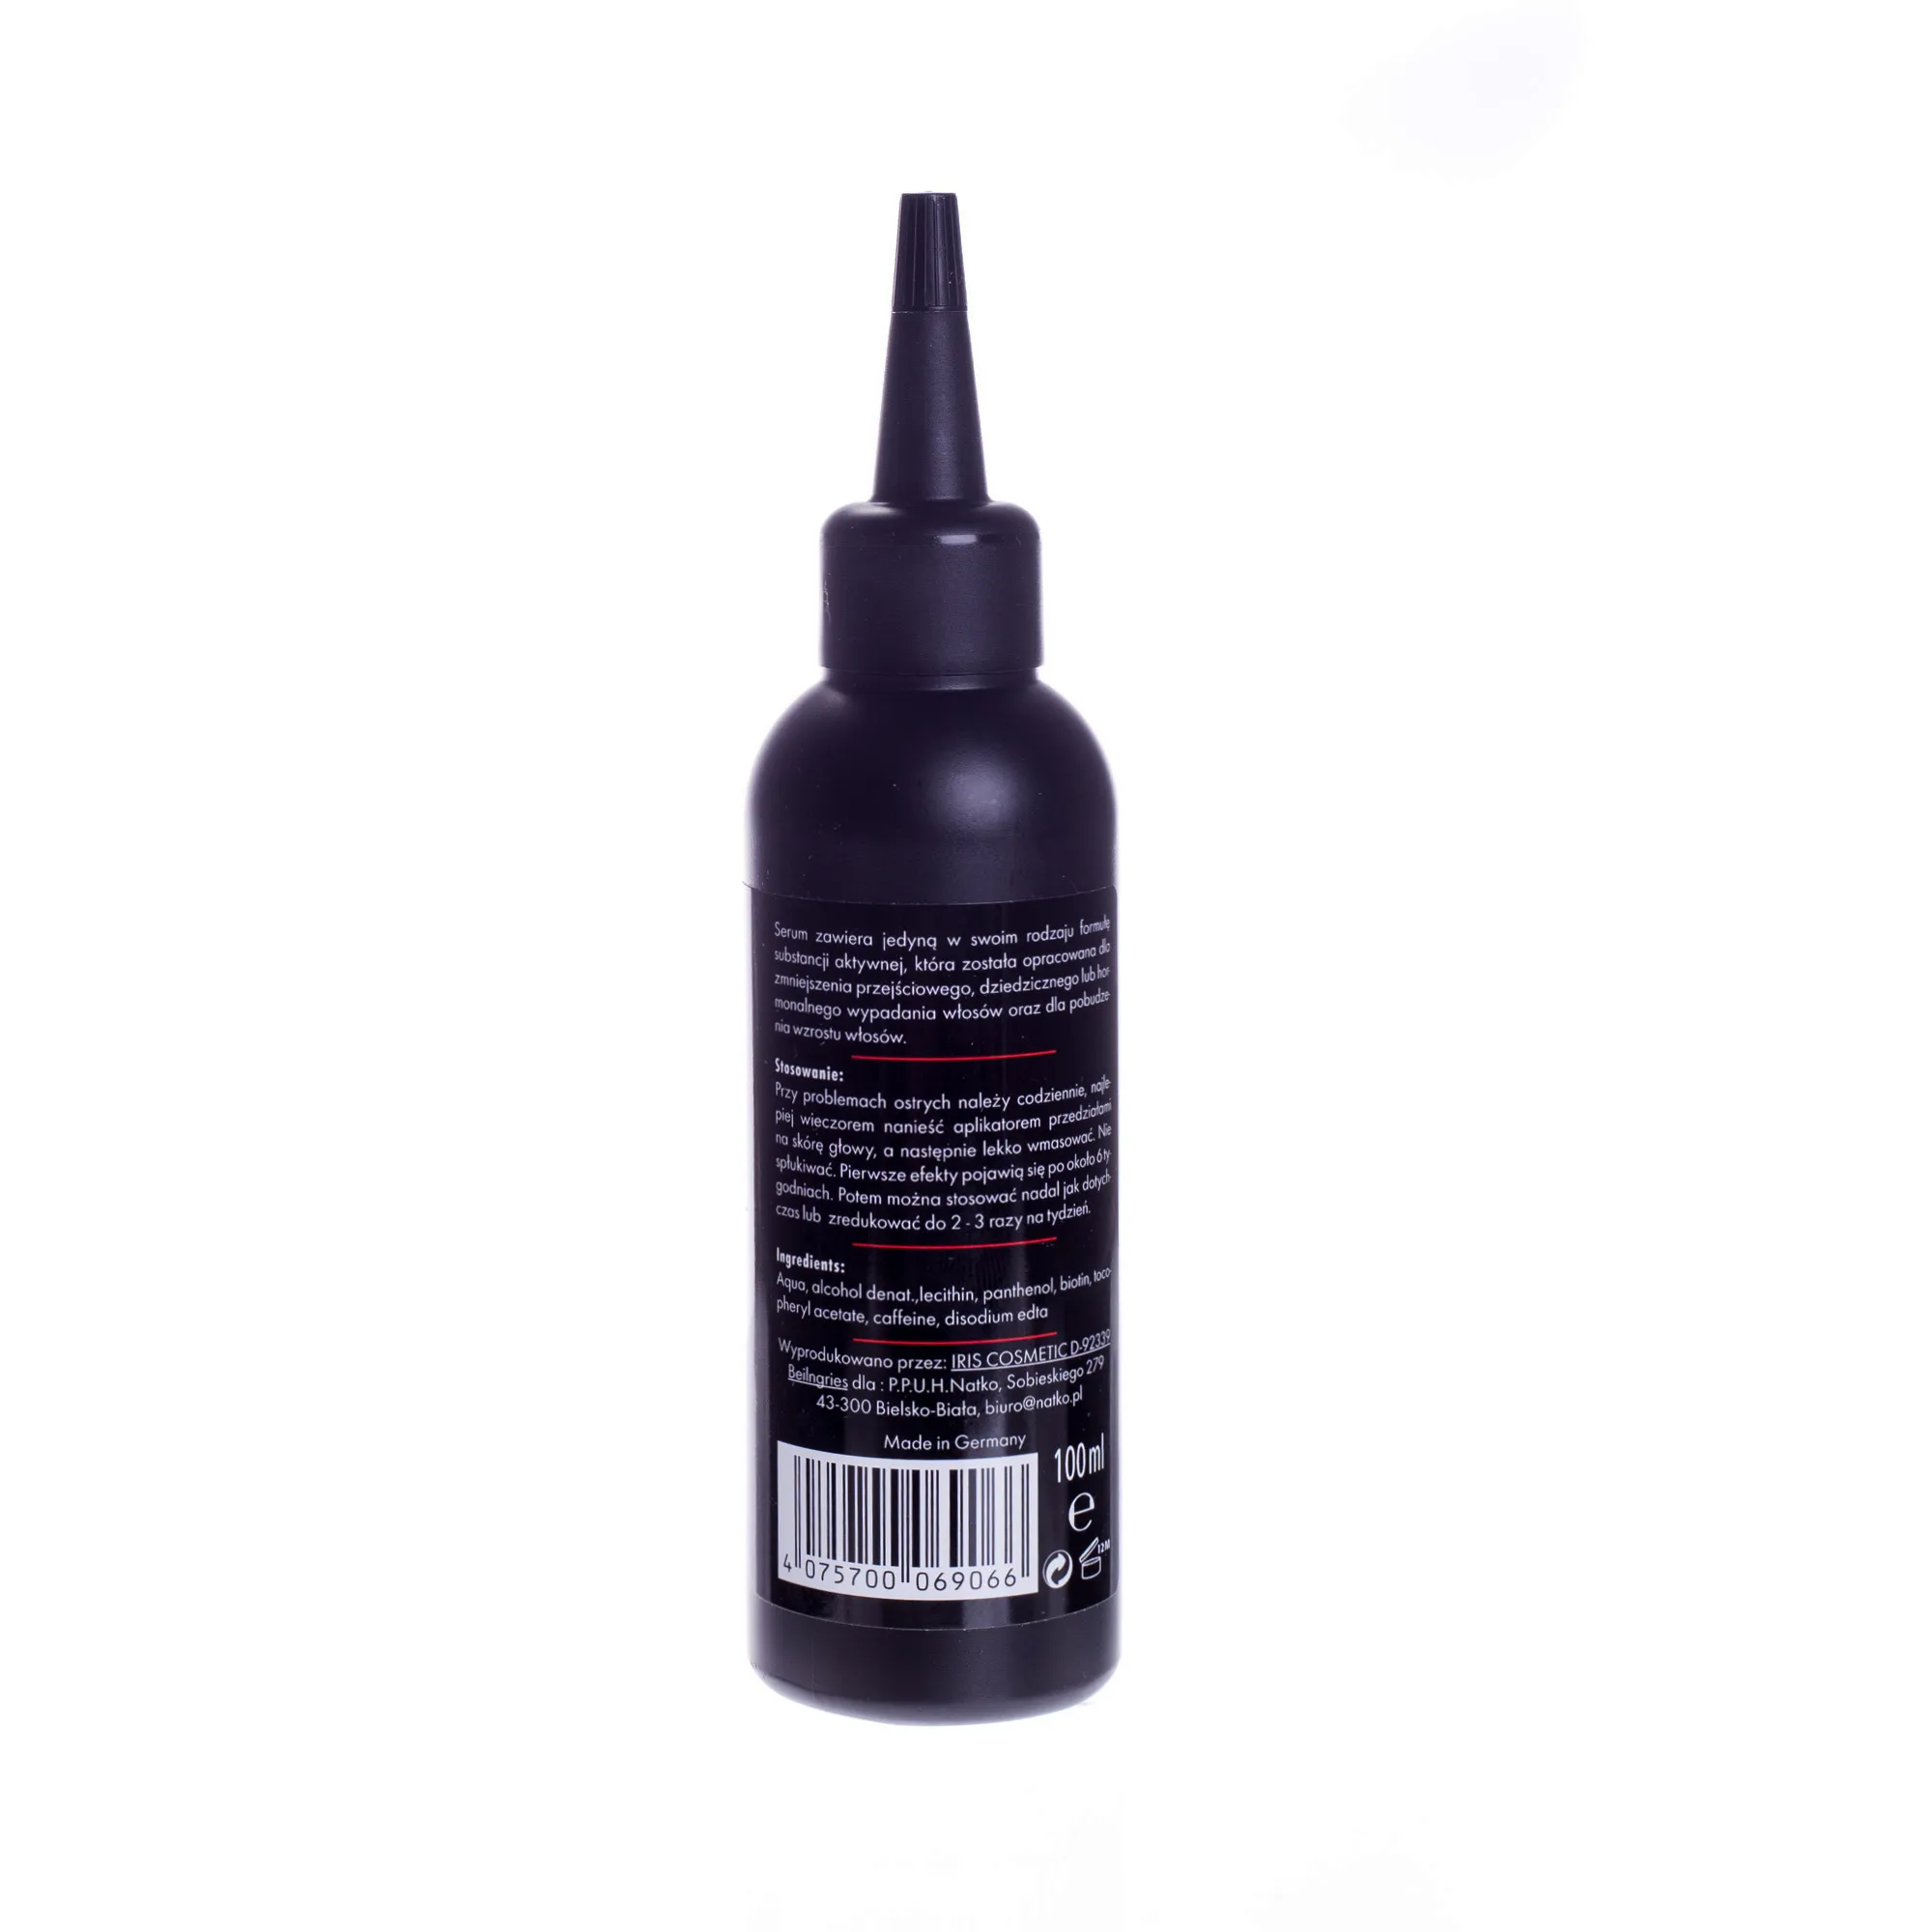 Revitax, serum na porost włosów, 100 ml 